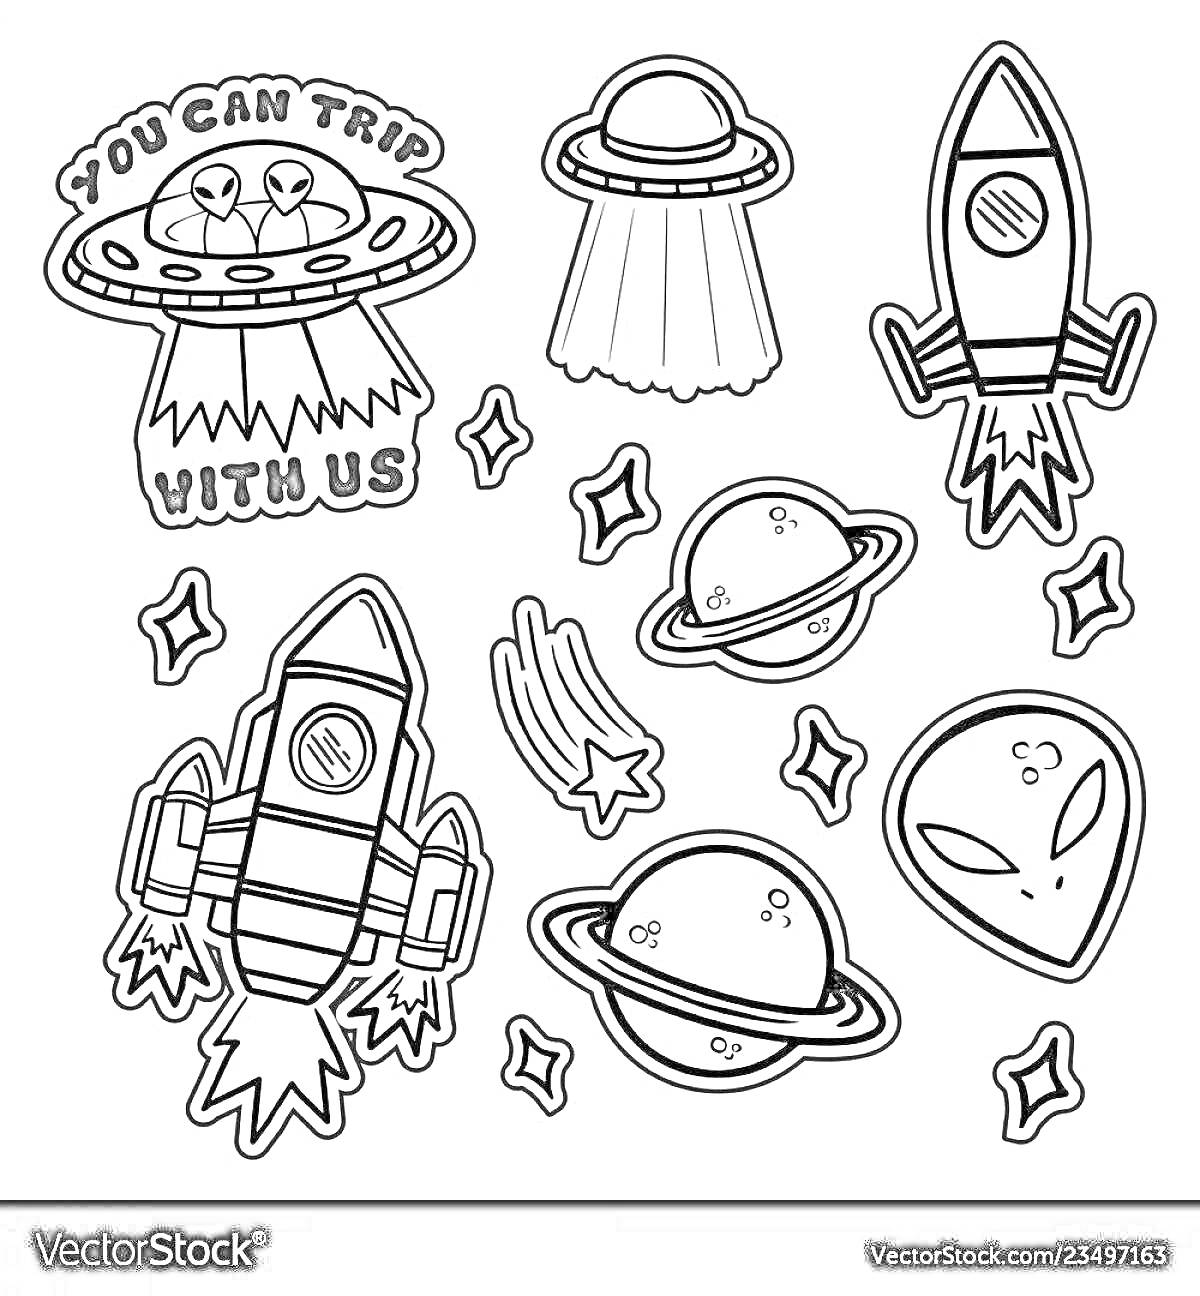 Раскраска Летающая тарелка с надписью, ракета, НЛО, планеты с кольцами, звезды, метеор, голова инопланетянина